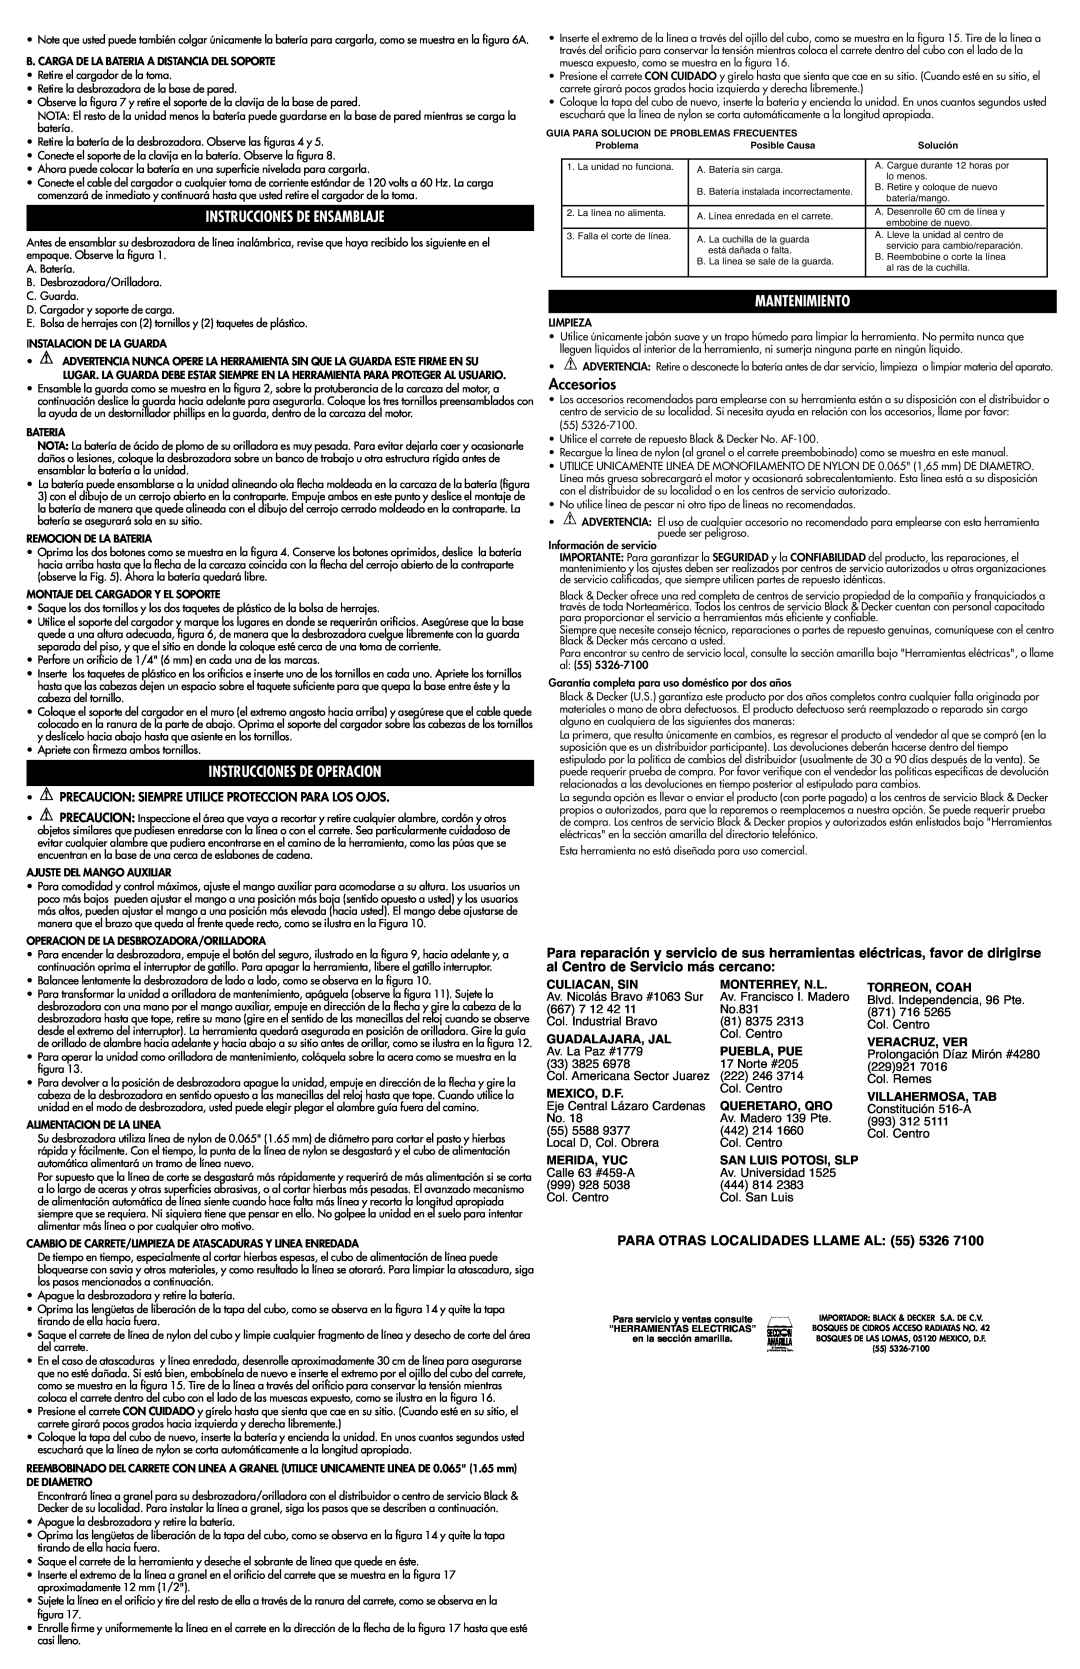 Black & Decker 243257-01 Instrucciones De Ensamblaje, Instrucciones De Operacion, Mantenimiento, Accesorios 